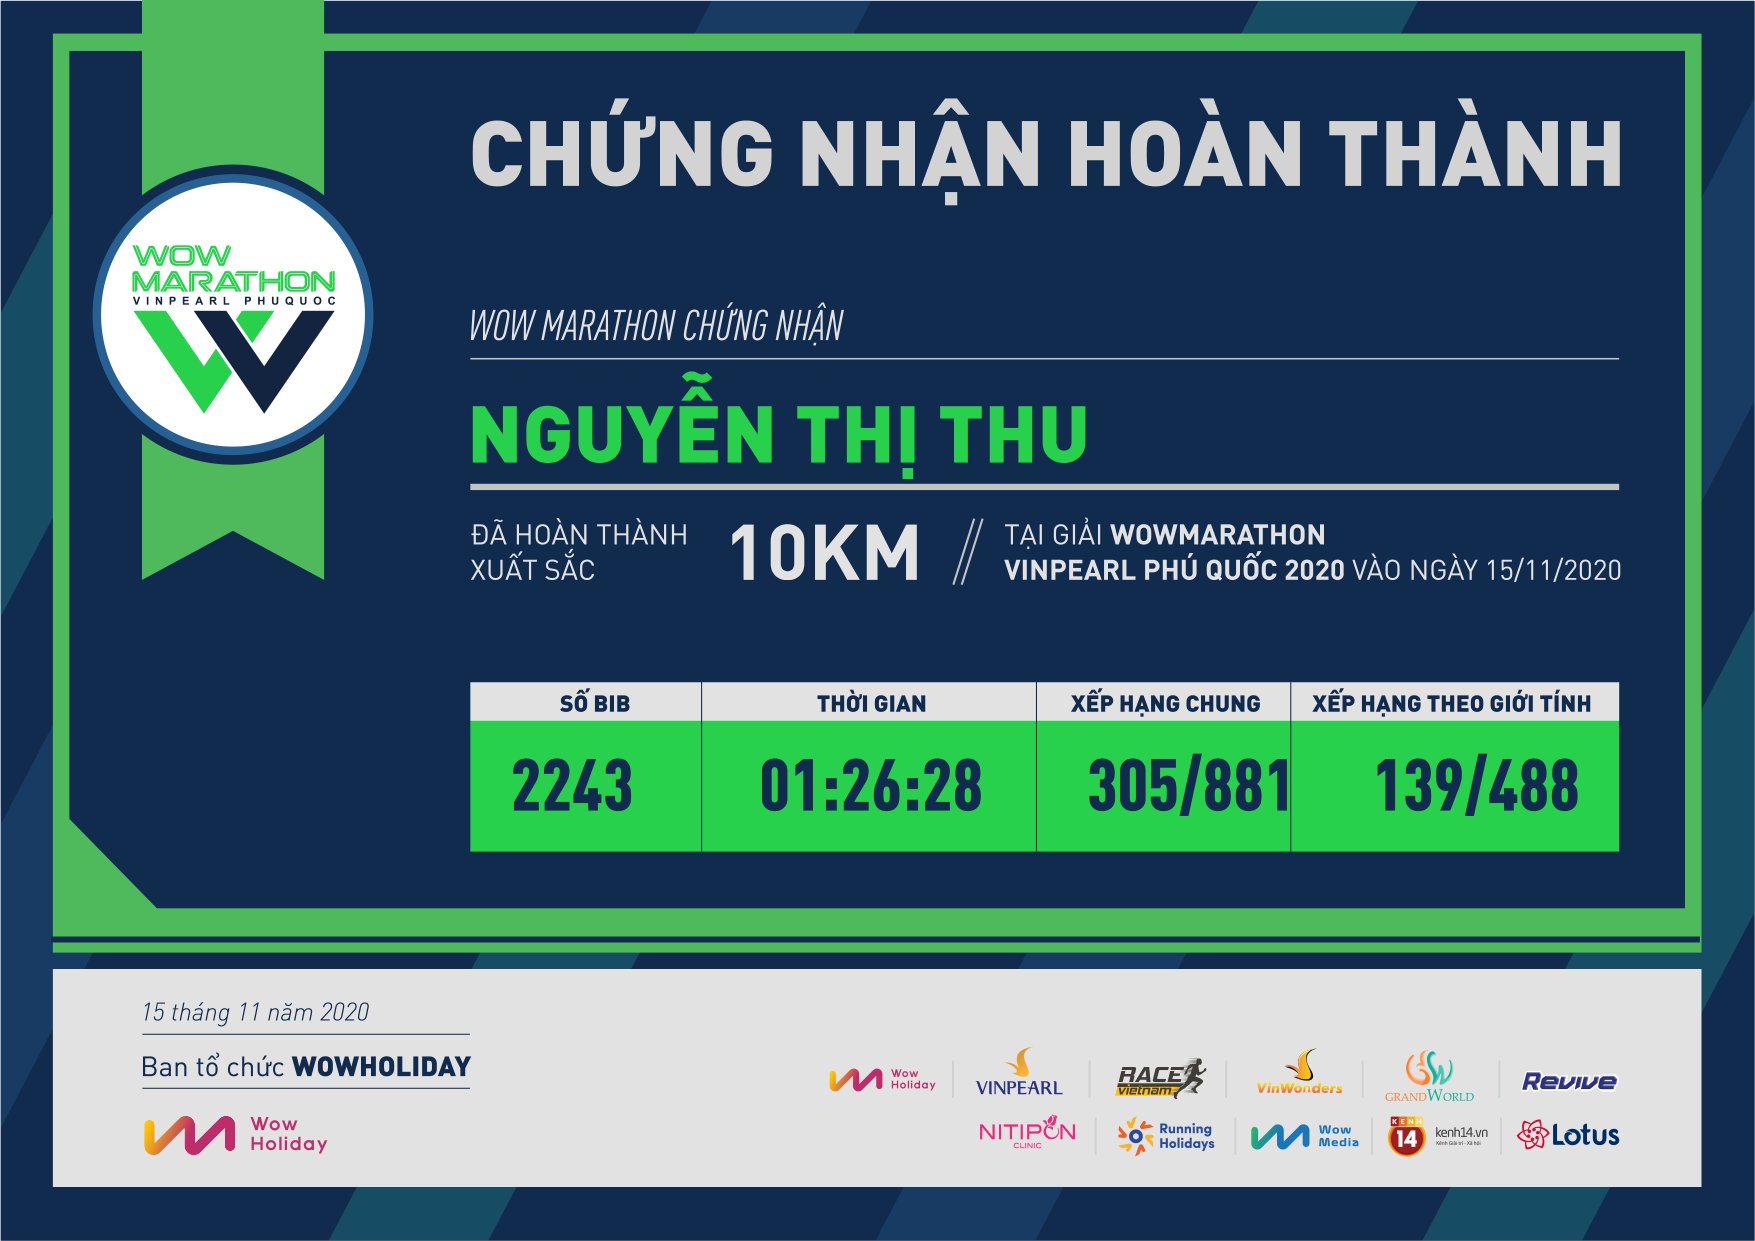 2243 - Nguyễn Thị Thu